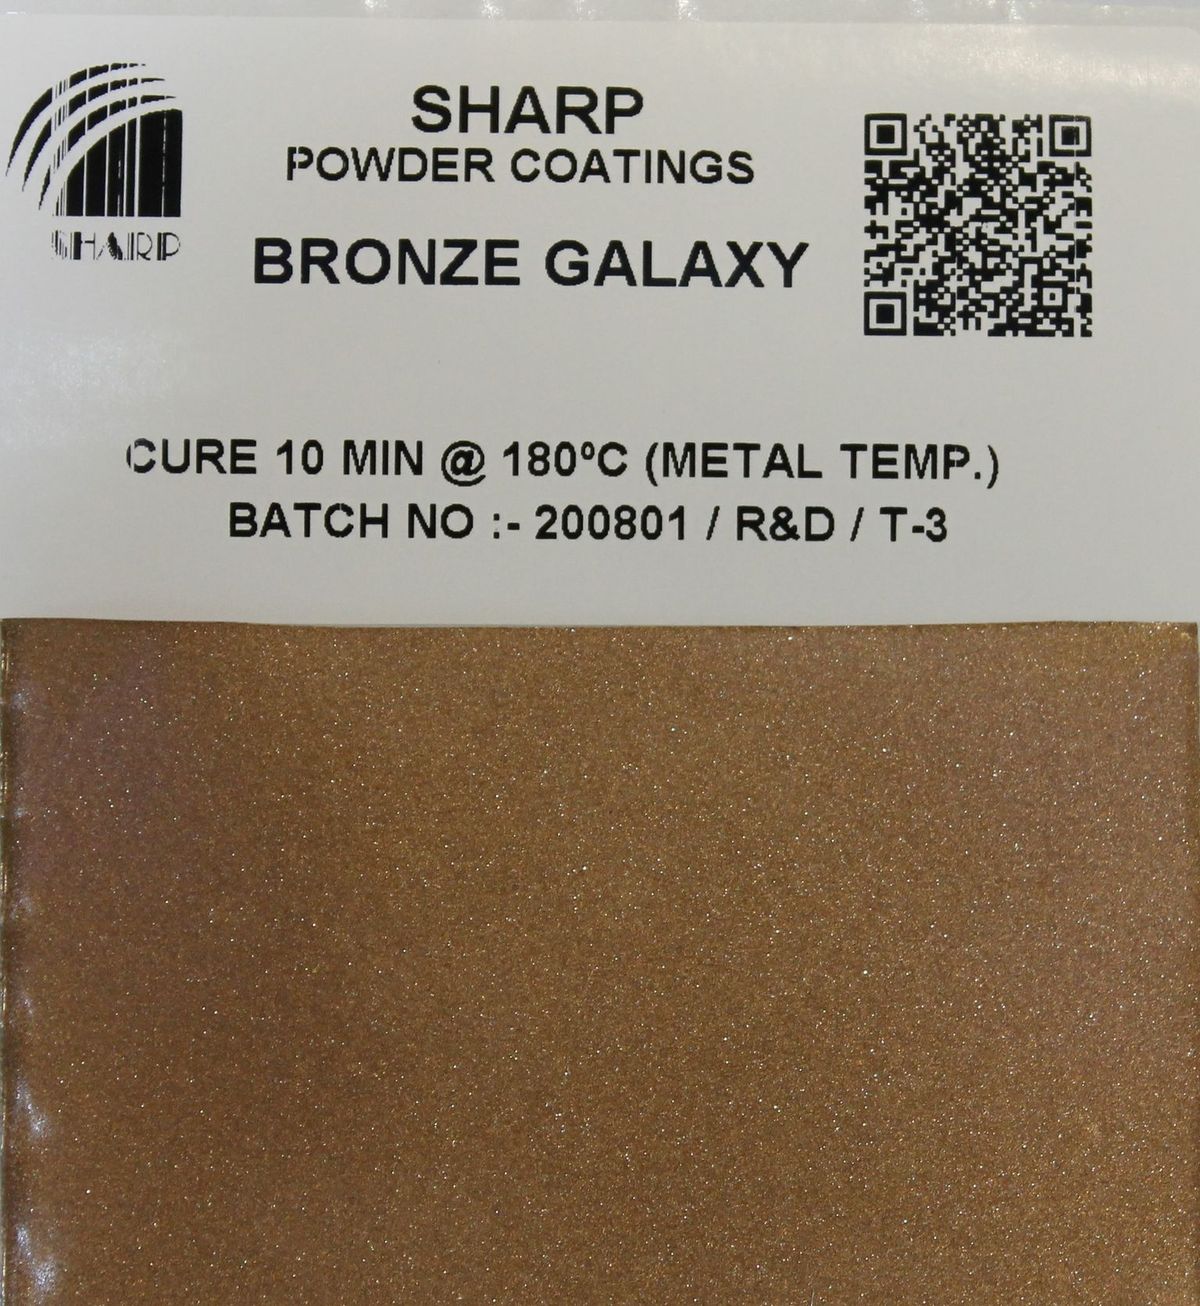 Bronze Metallic